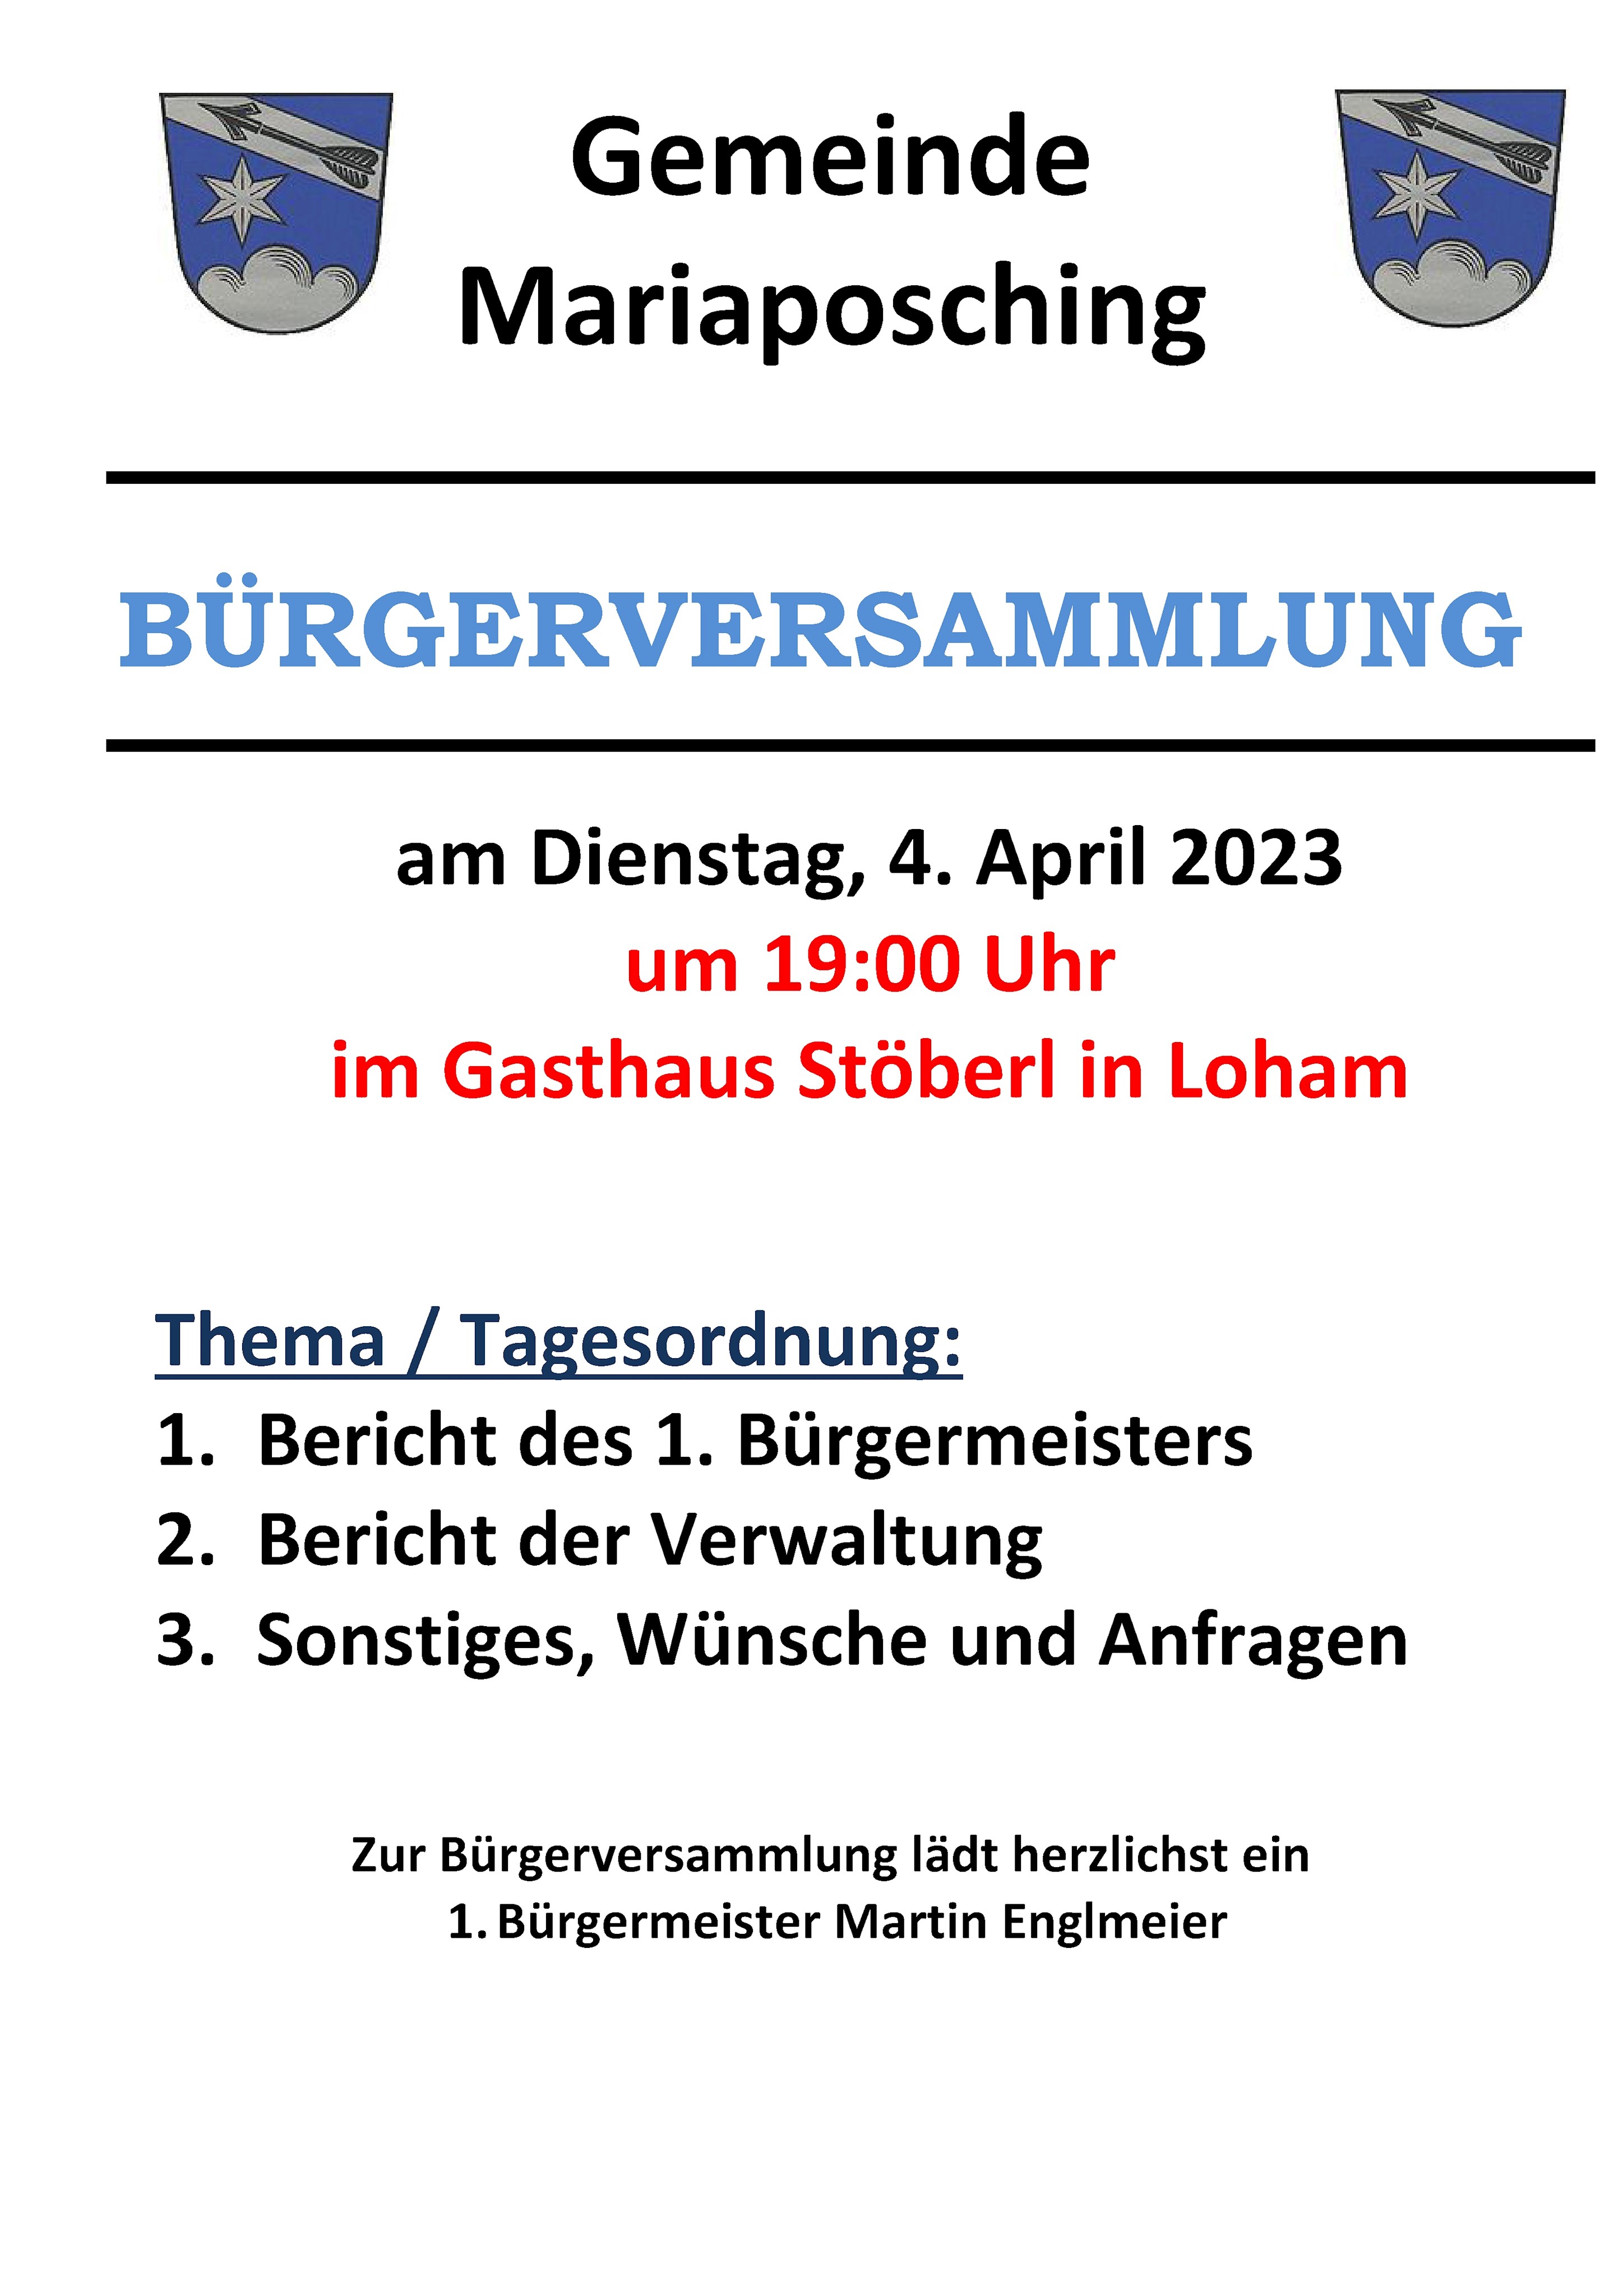 BV Plakat Mariaposching 2023.jpg